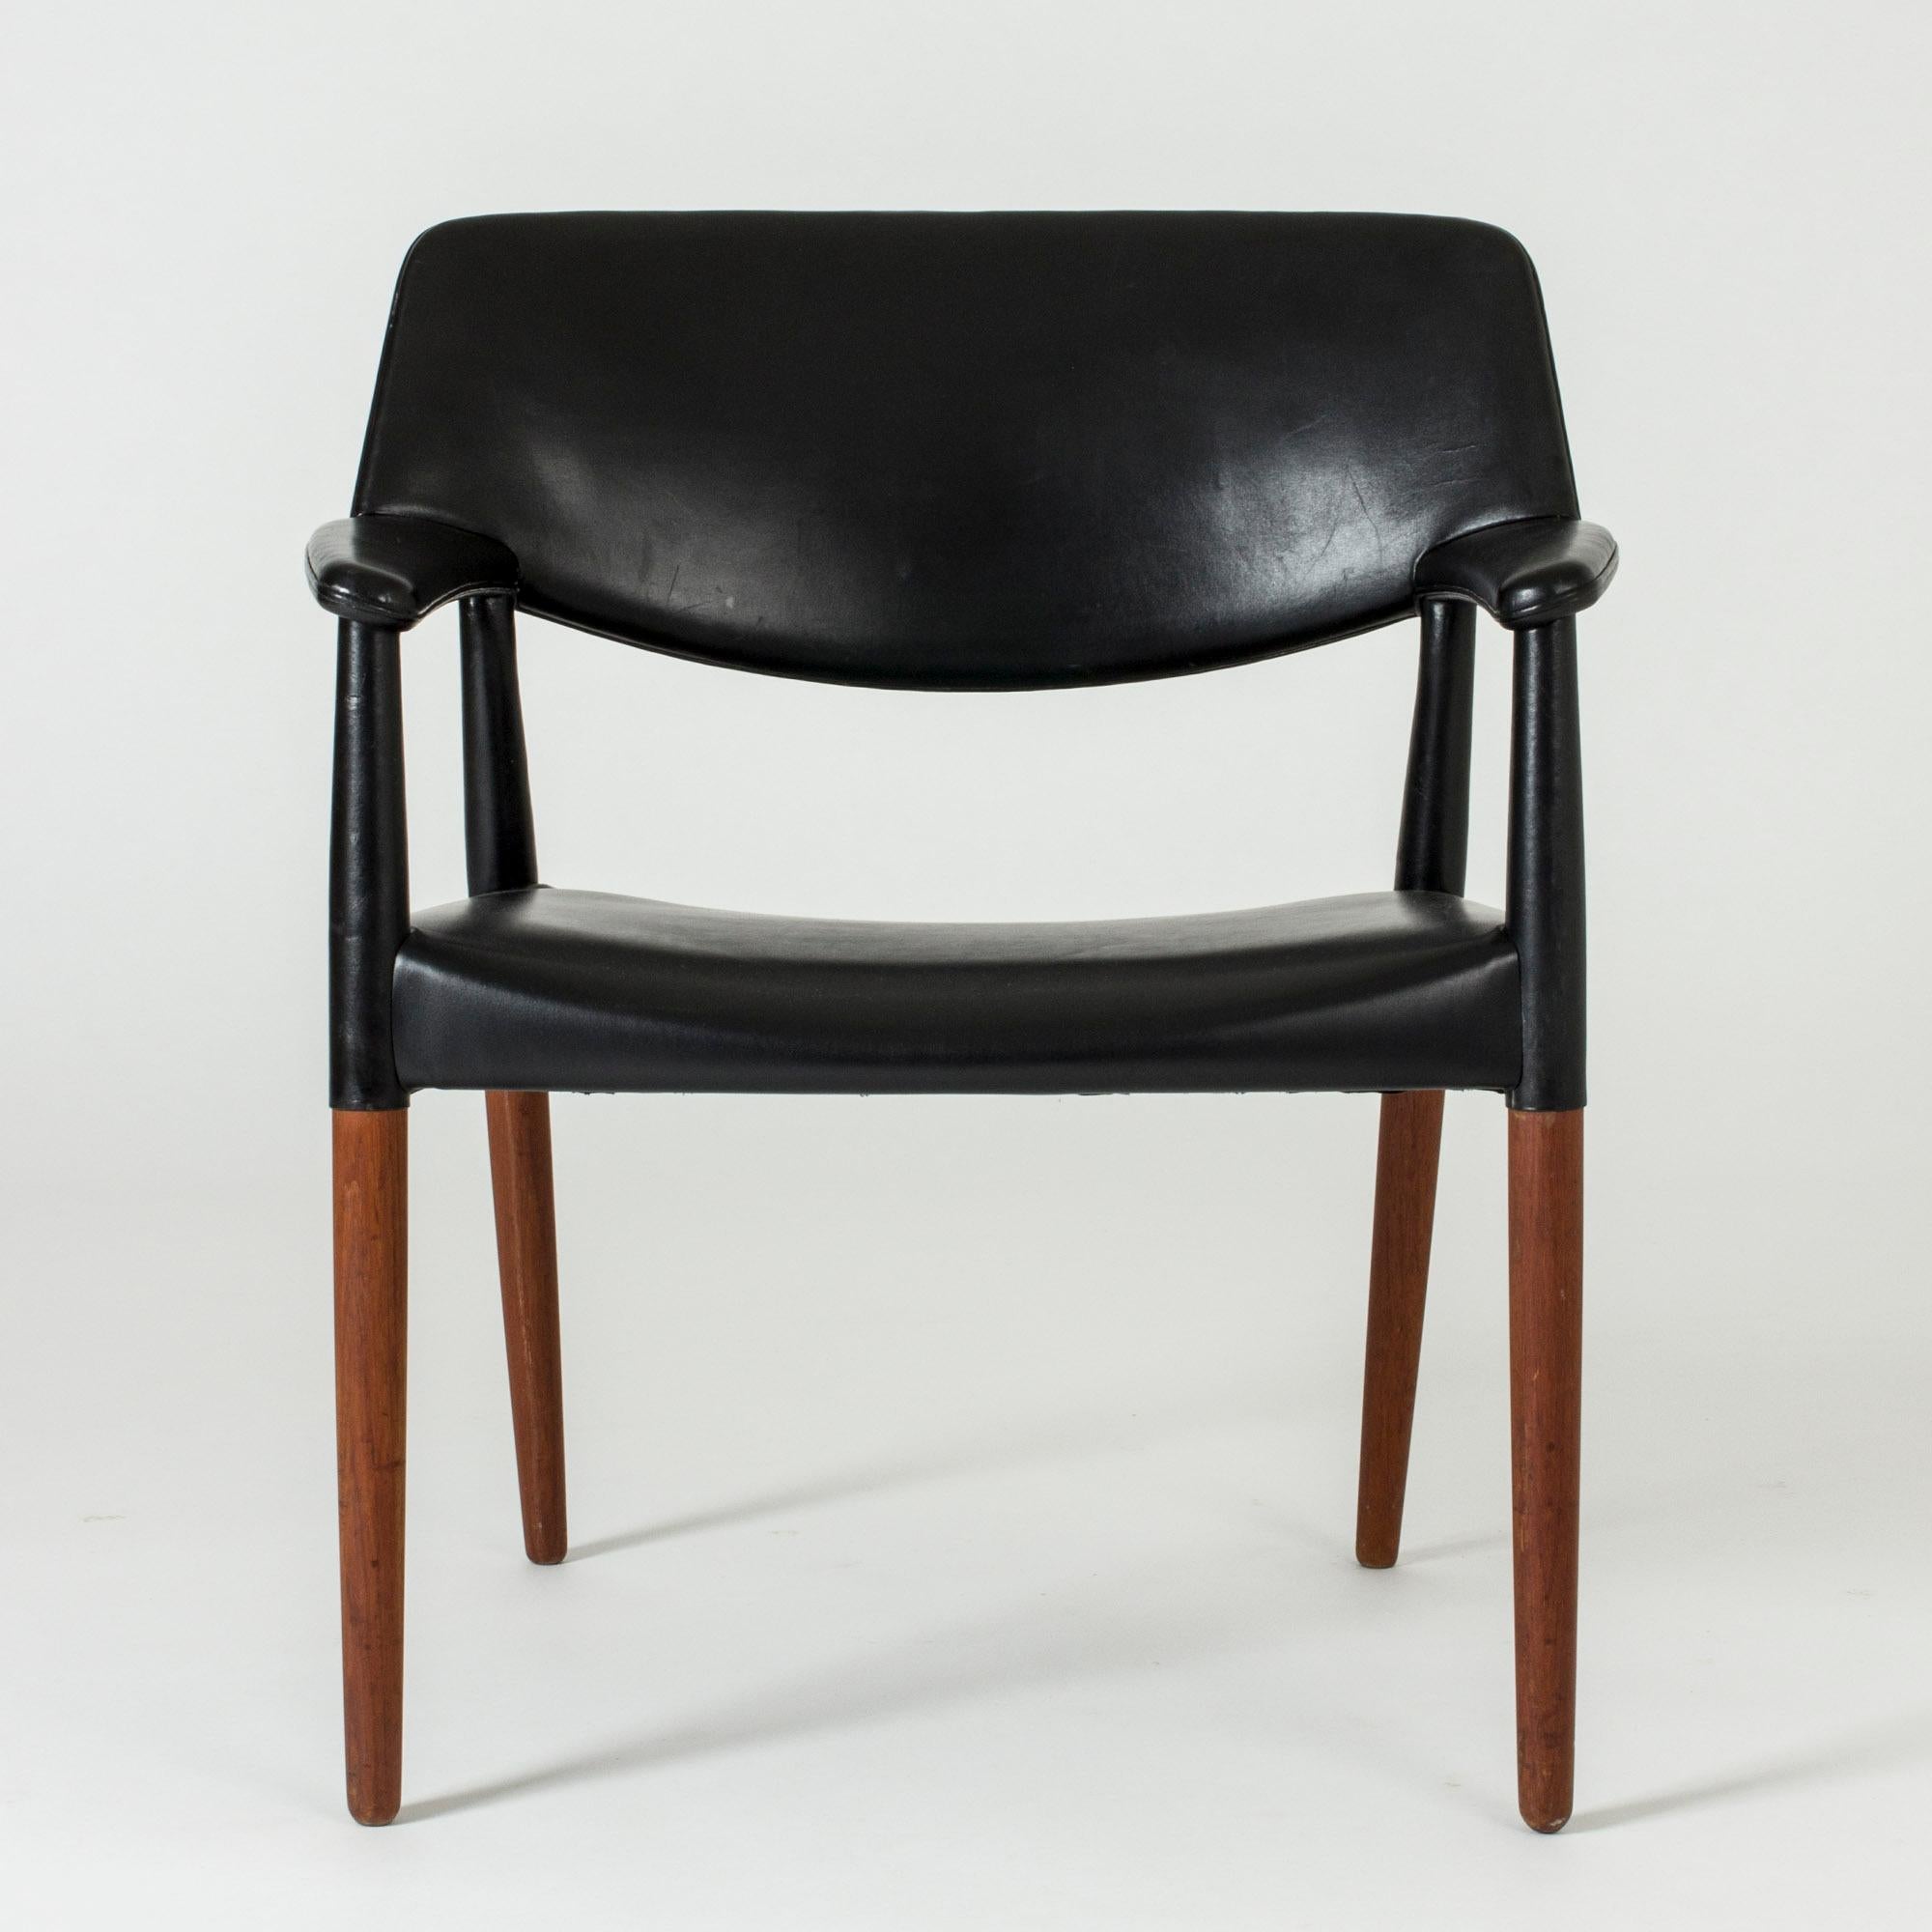 Cooler Sessel von Aksel Bender Madsen und Ejner Larsen, hergestellt aus Teakholz und mit schwarzem Leder bezogen. Hoher Komfort.

Maße: Sitzhöhe 42 cm.